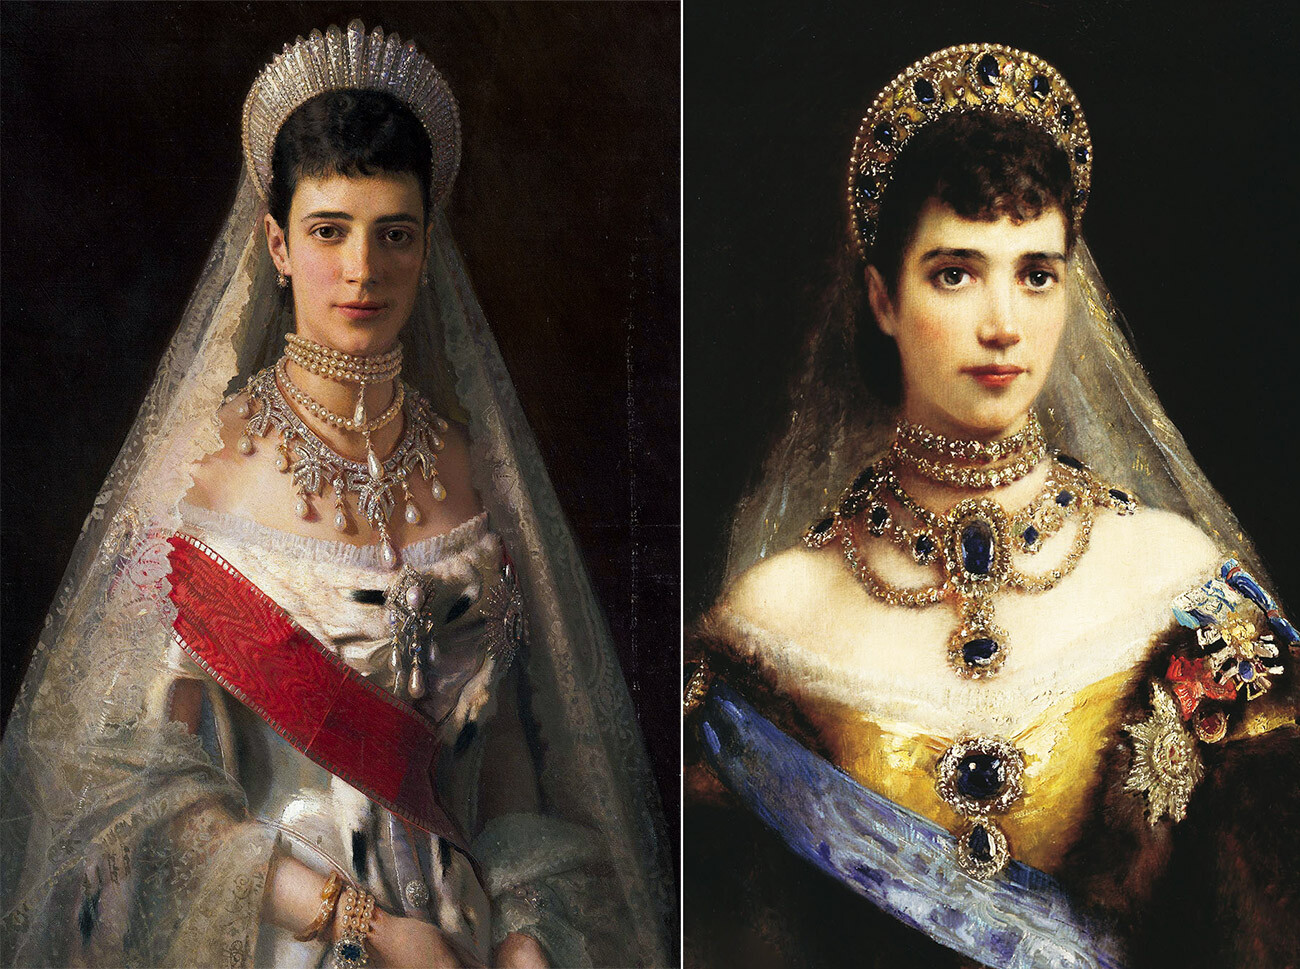 A imperatriz Maria Fiodorovna (princesa Dagmar da Dinamarca) com um vestido de gala, em 1881, por Ivan Kramskoi (esq.). A imperatriz Maria Fiodorovna com kokochnik, por Konstantin Makôvski.